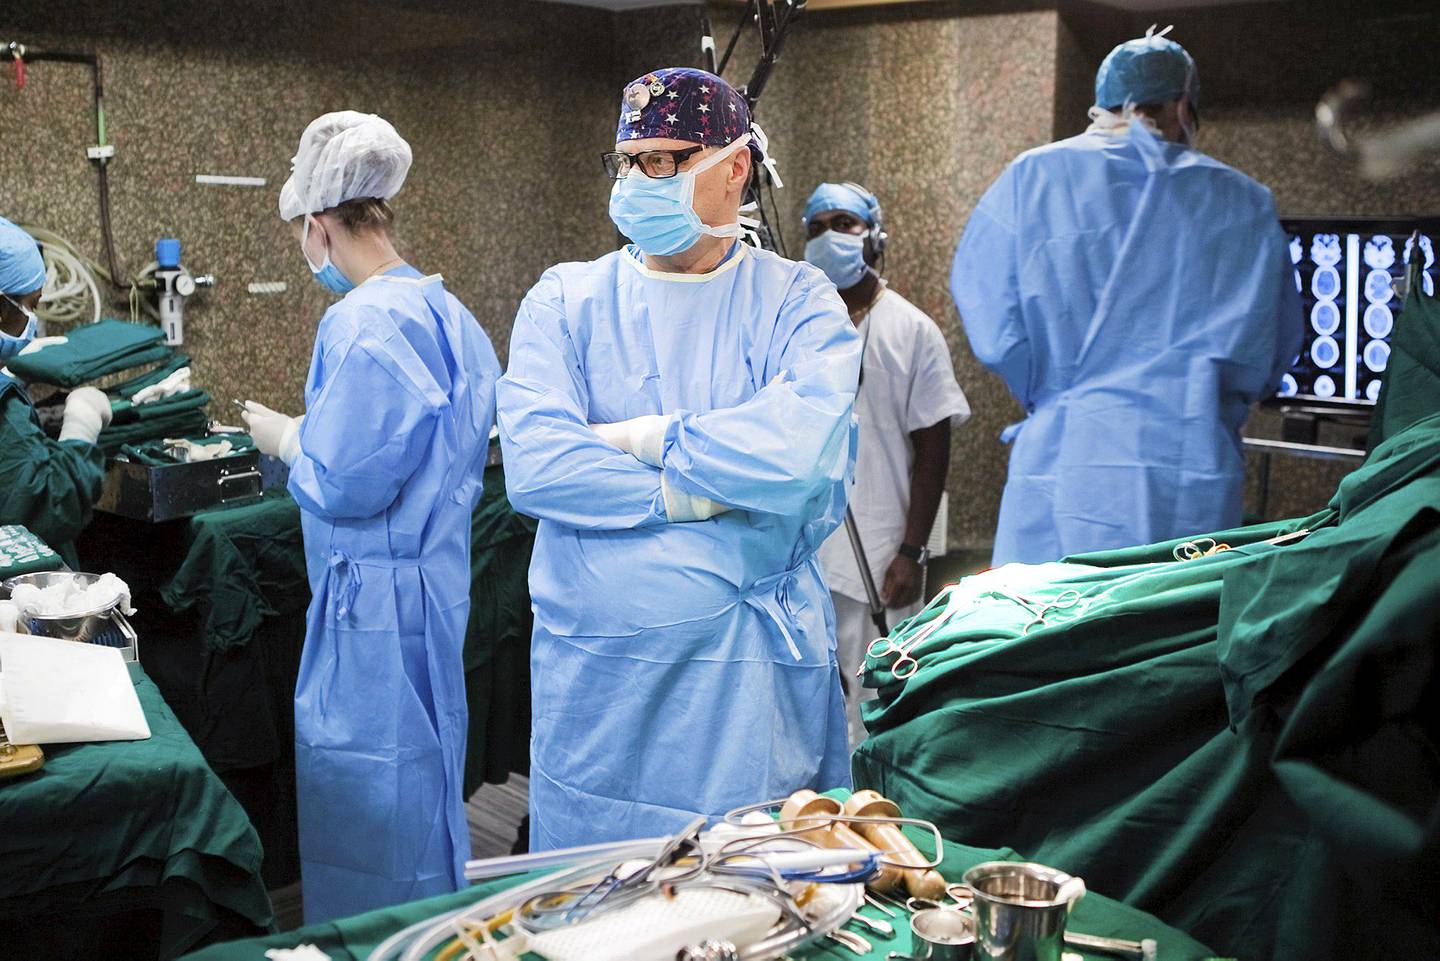 Kirurgia | Aivokirurgian supertähti matkusti Intiaan tekemään leikkauksia 2011 – HS tapasi Hernesniemen Mumbaissa